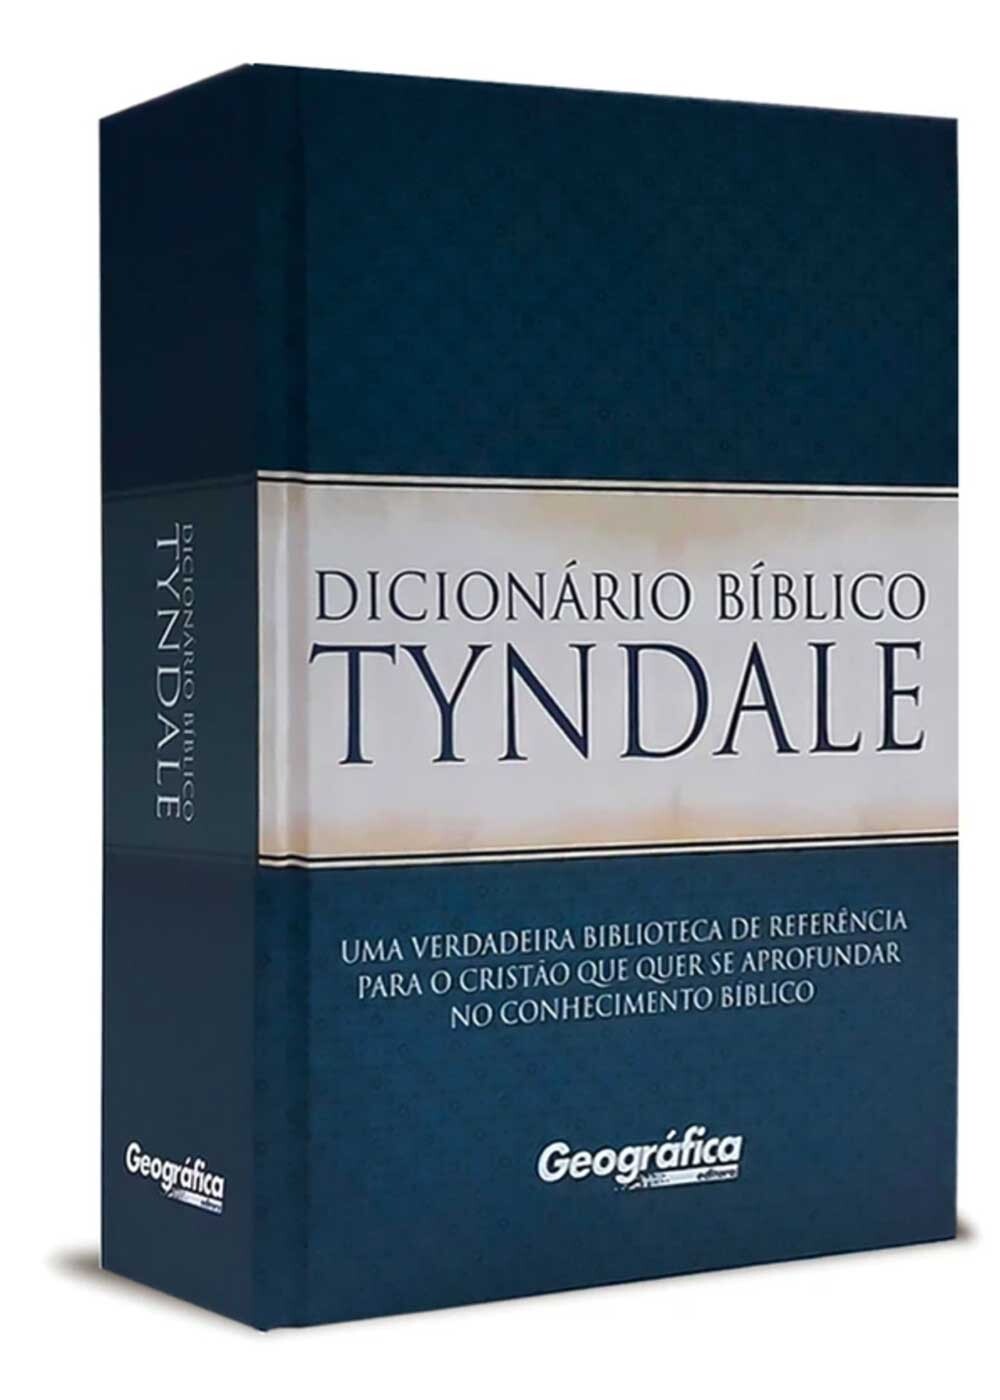 Dicionario Bíblico